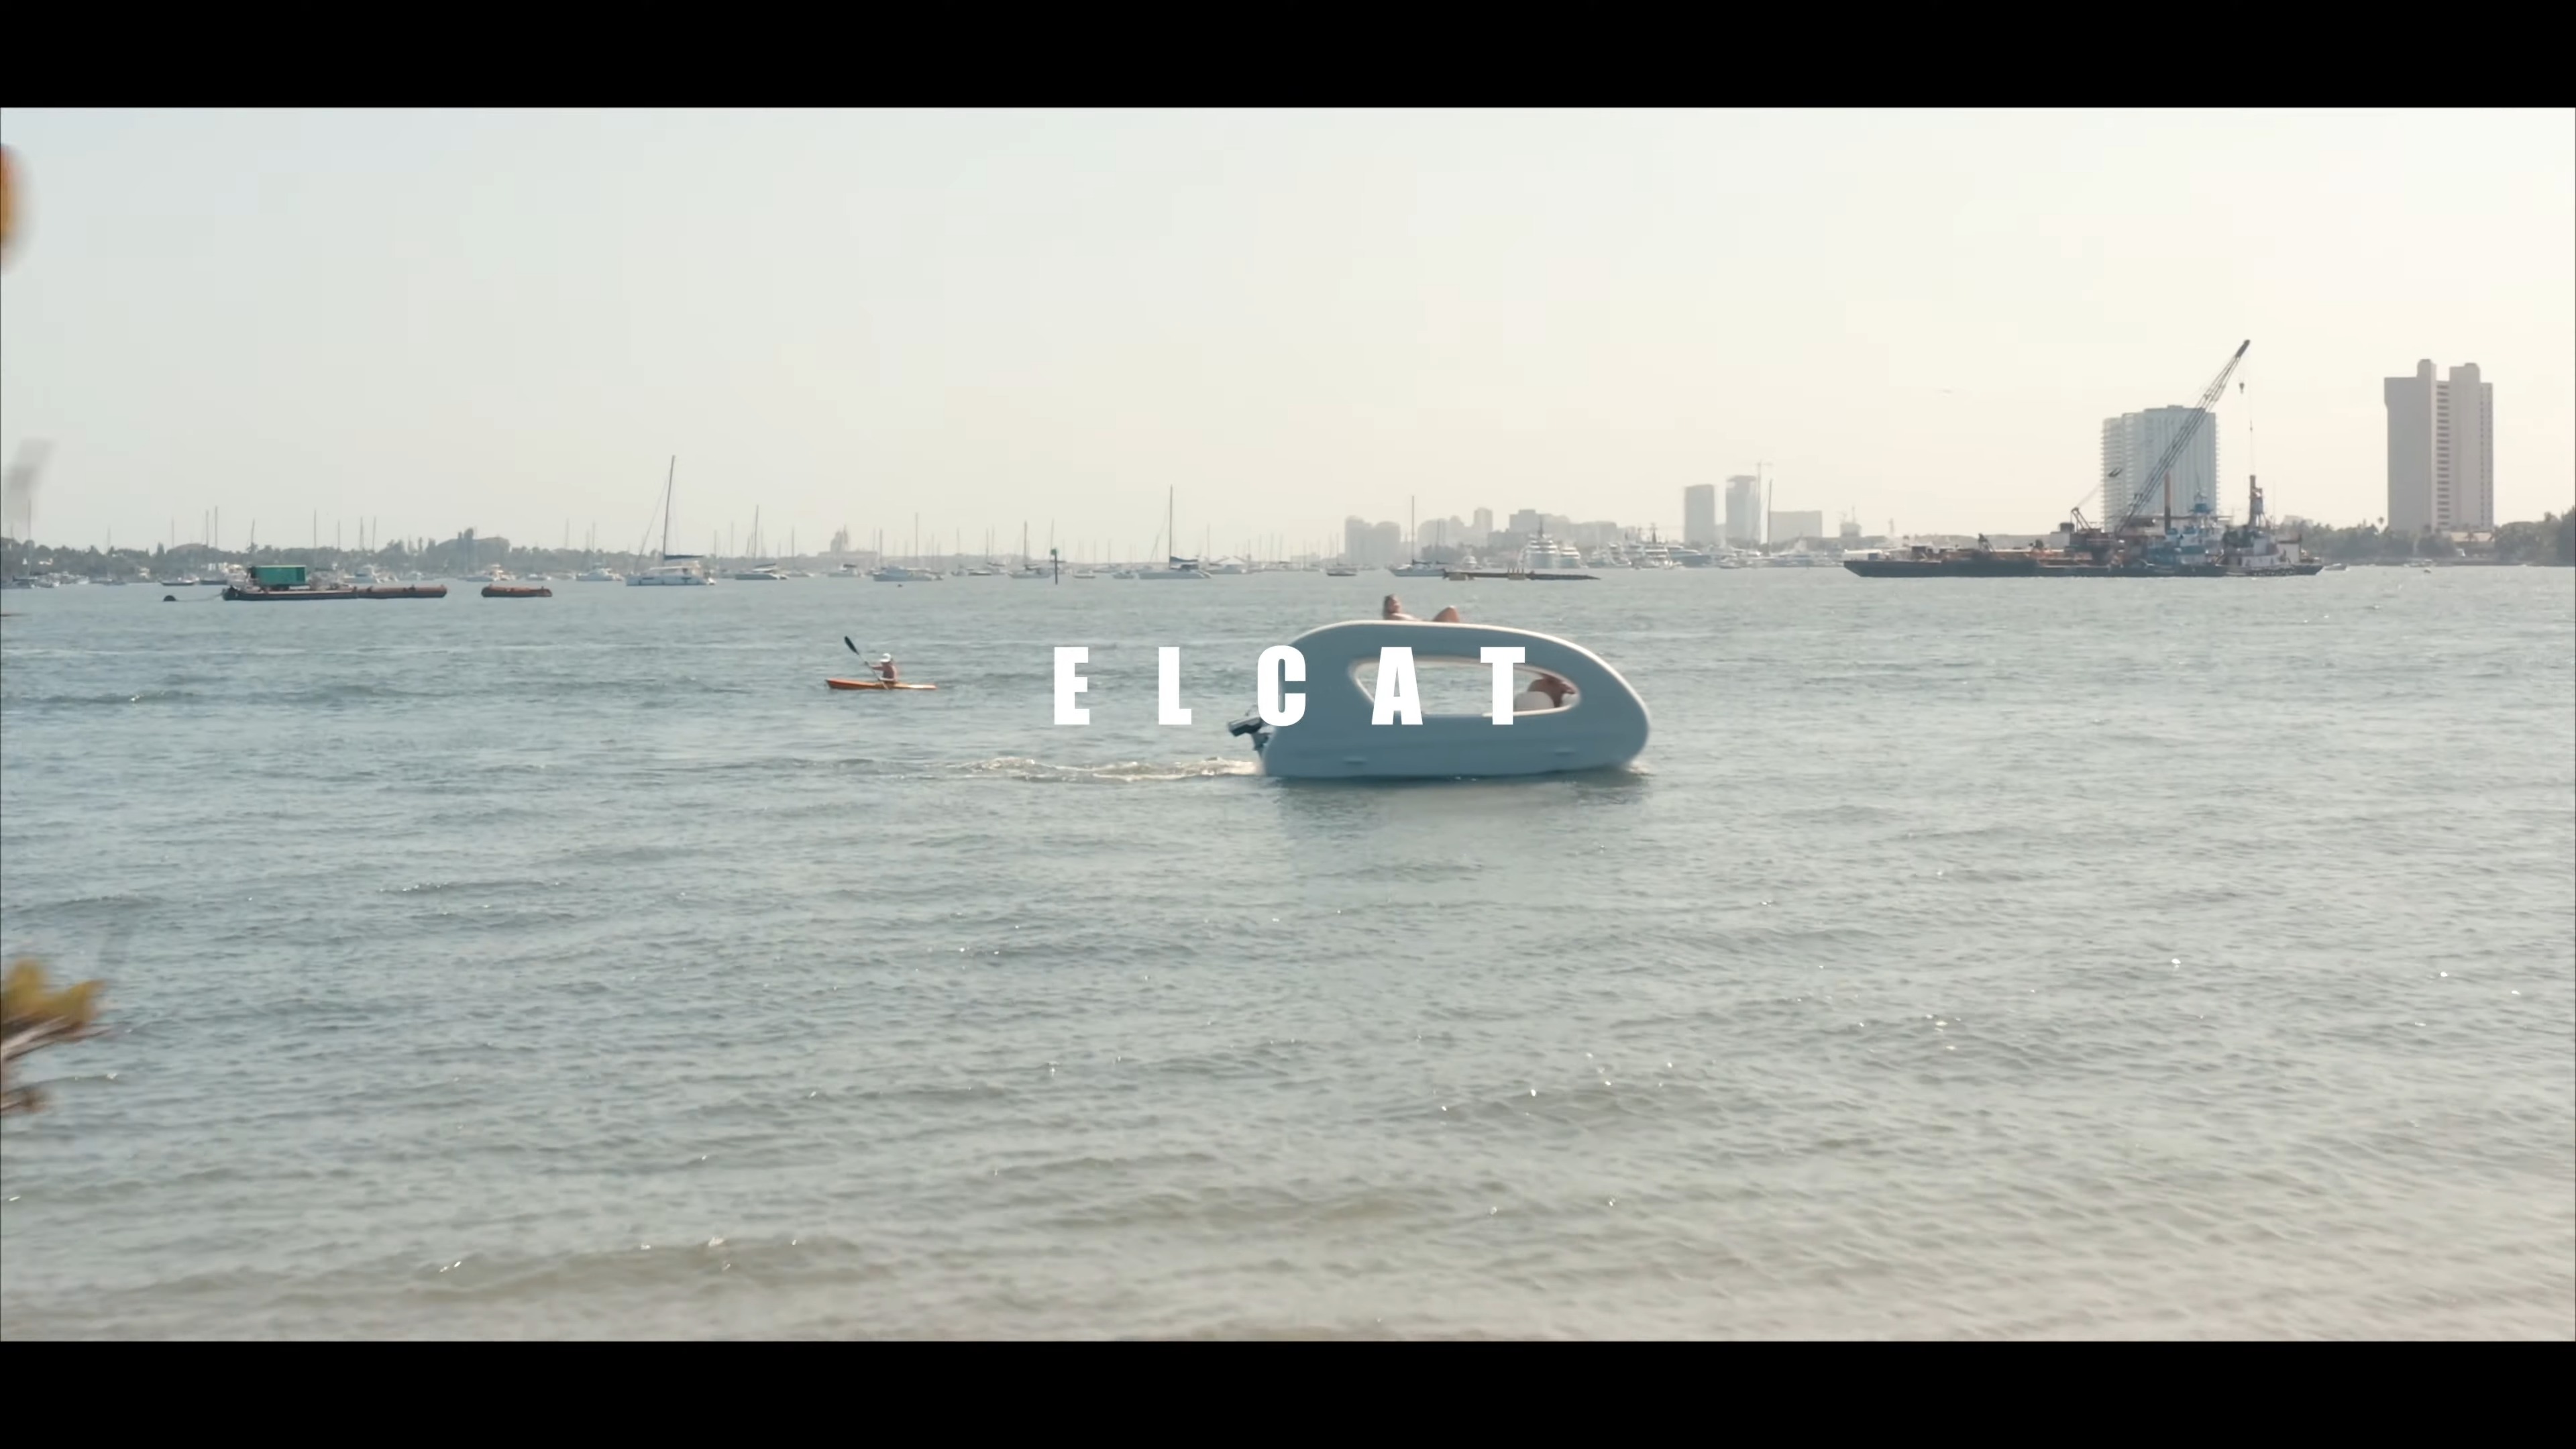 Łódka elektryczna Elcat (źródło: GoSun/YouTube)